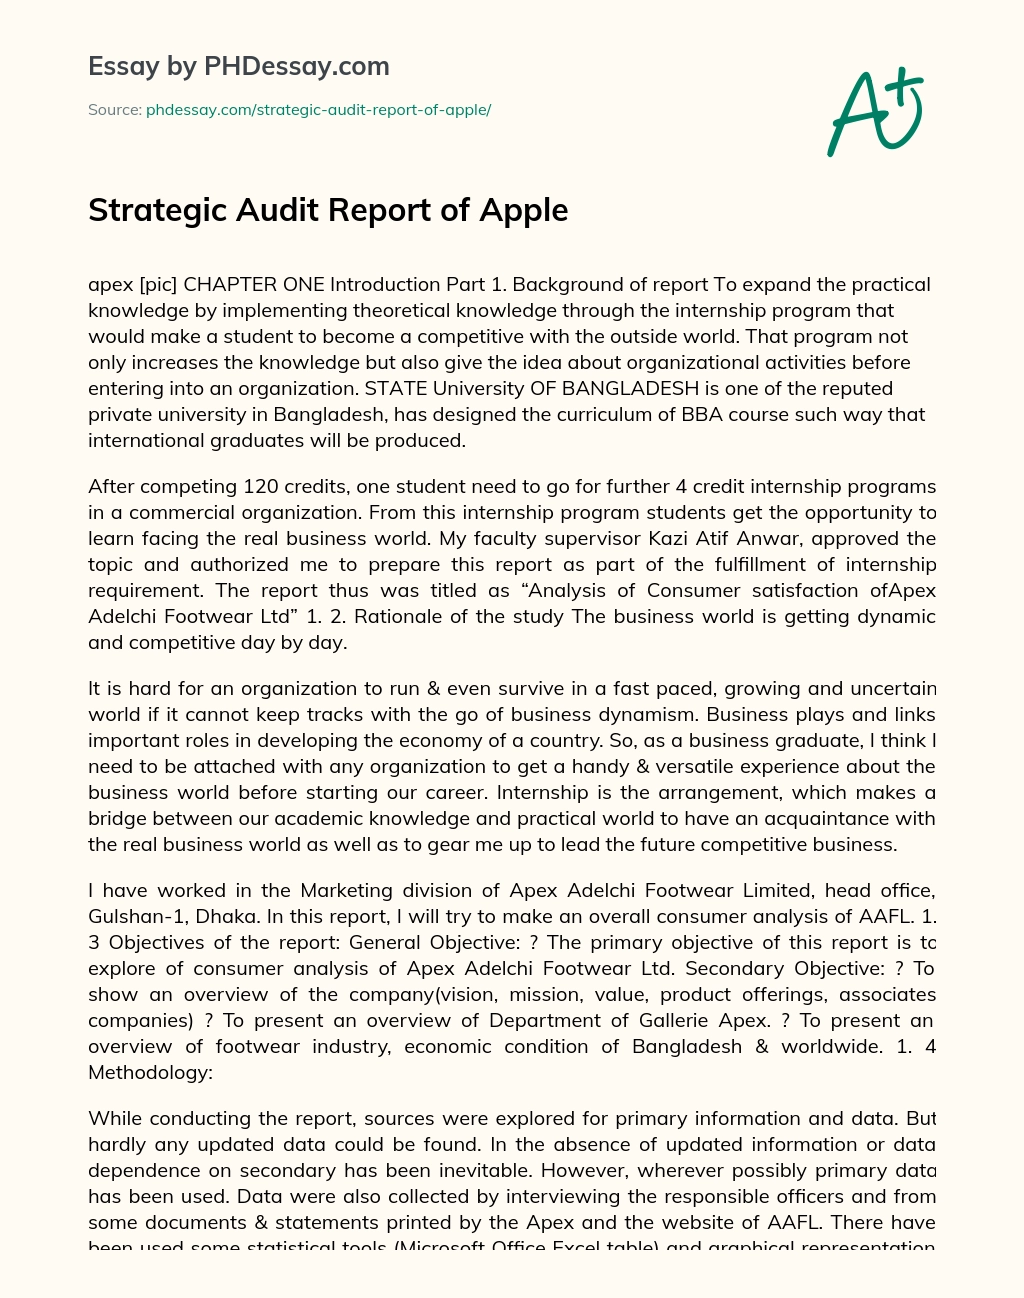 Strategic Audit Report of Apple essay